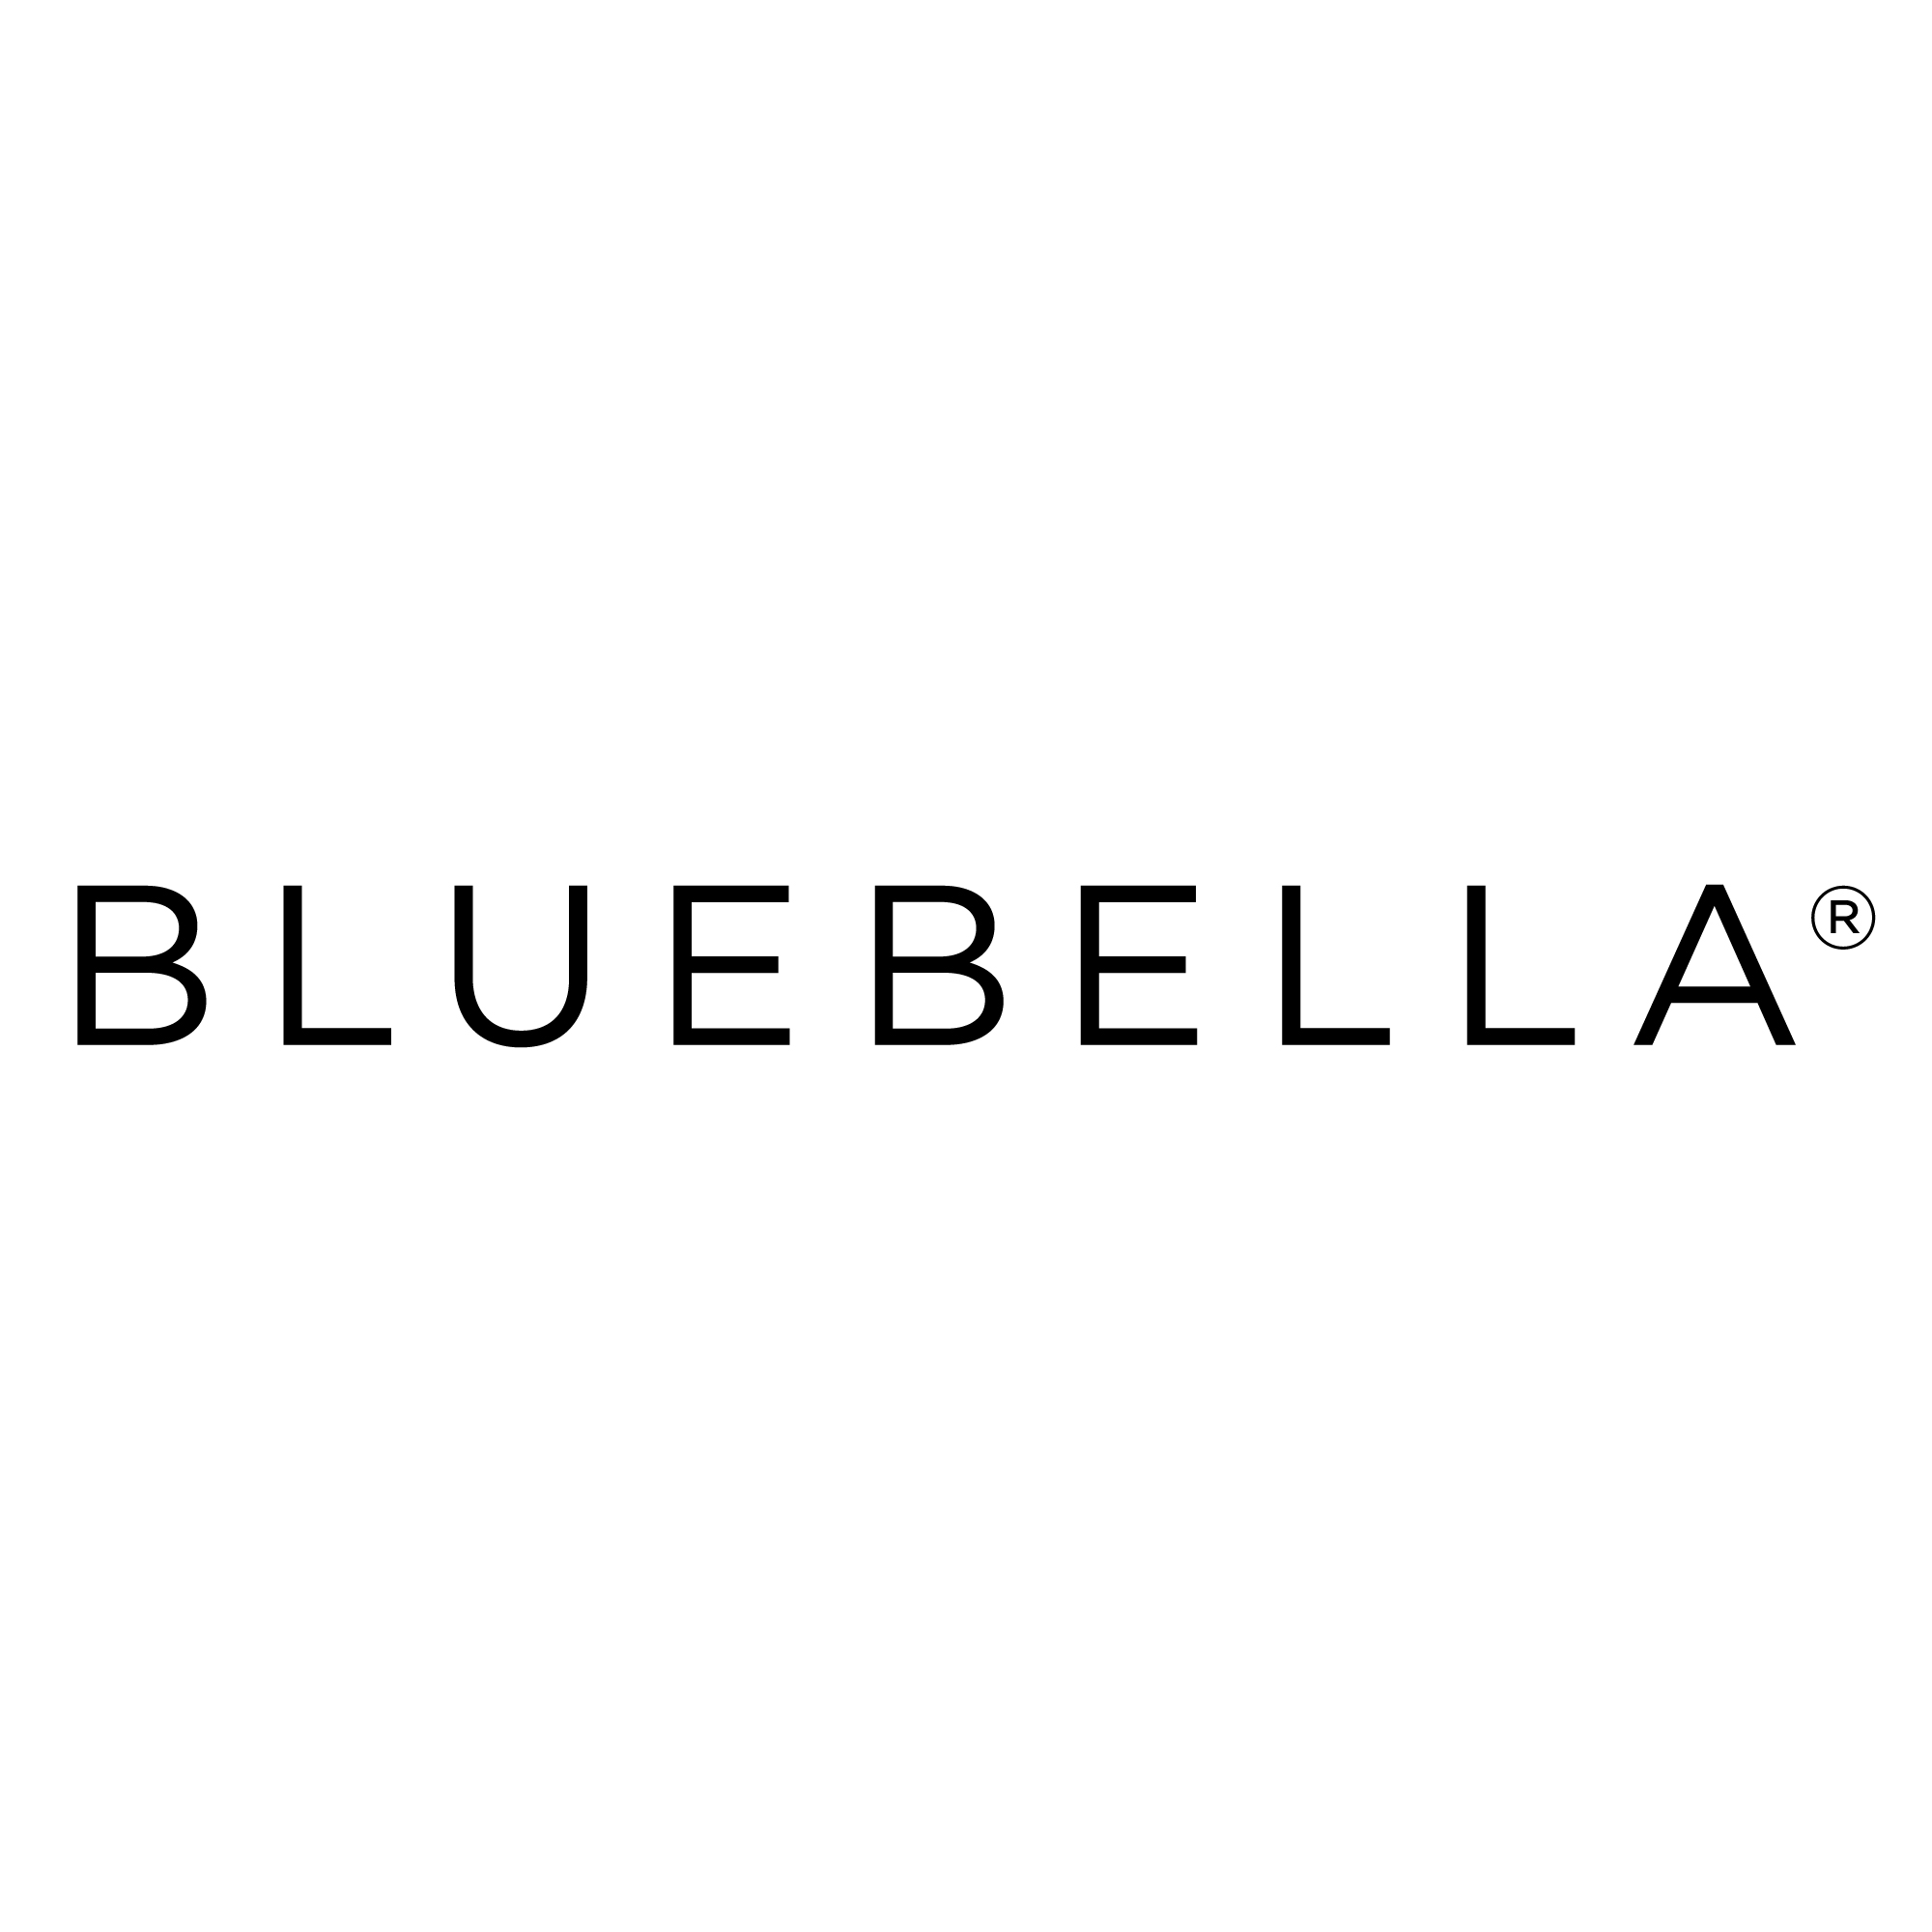 100% WORKING Bluebella Discount Code Australia ([month] [year]) 5